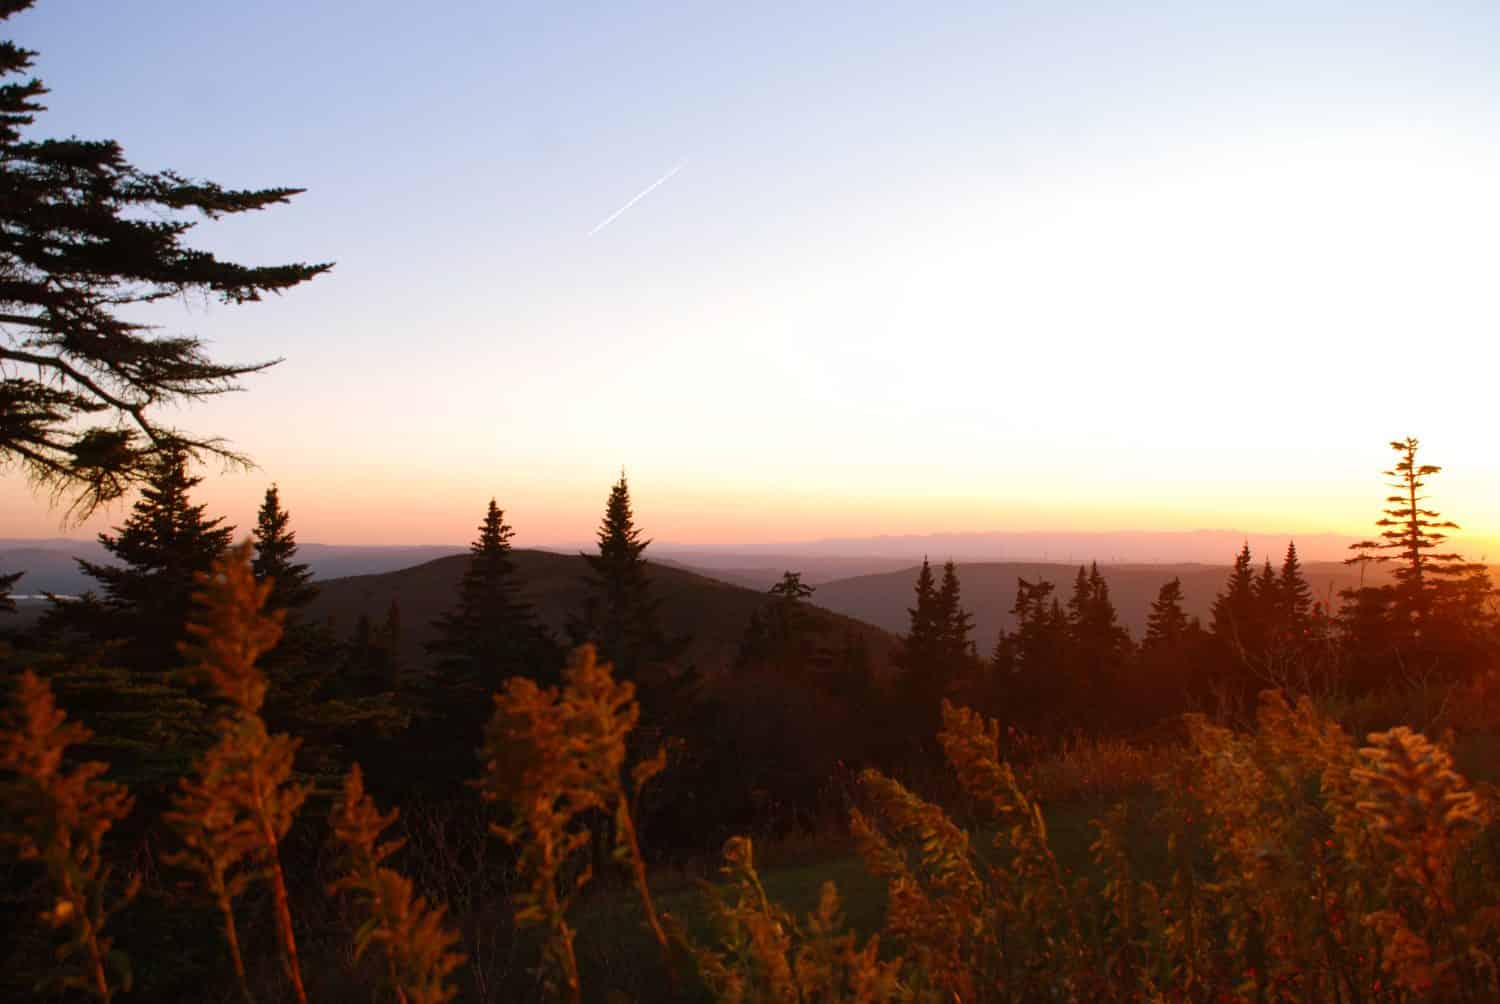 Autumn sunset from the peak of Mt. Greylock, the highest mountain in Massachusetts, USA